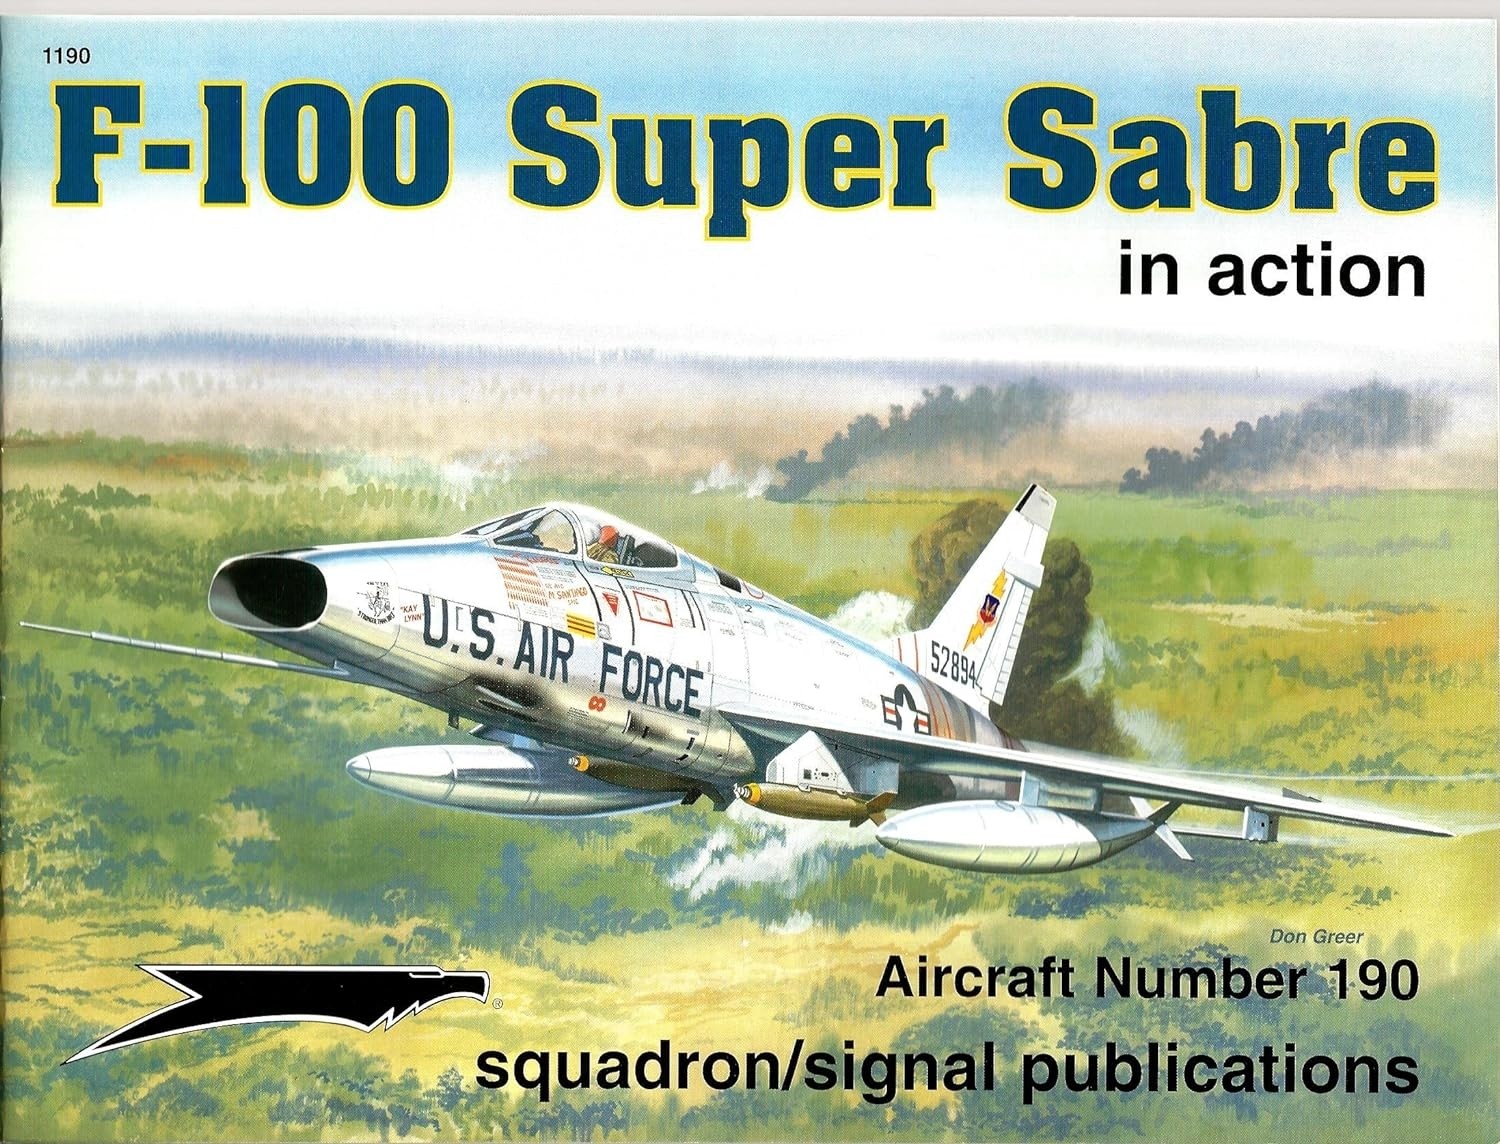 F-100 Super Sabre in action